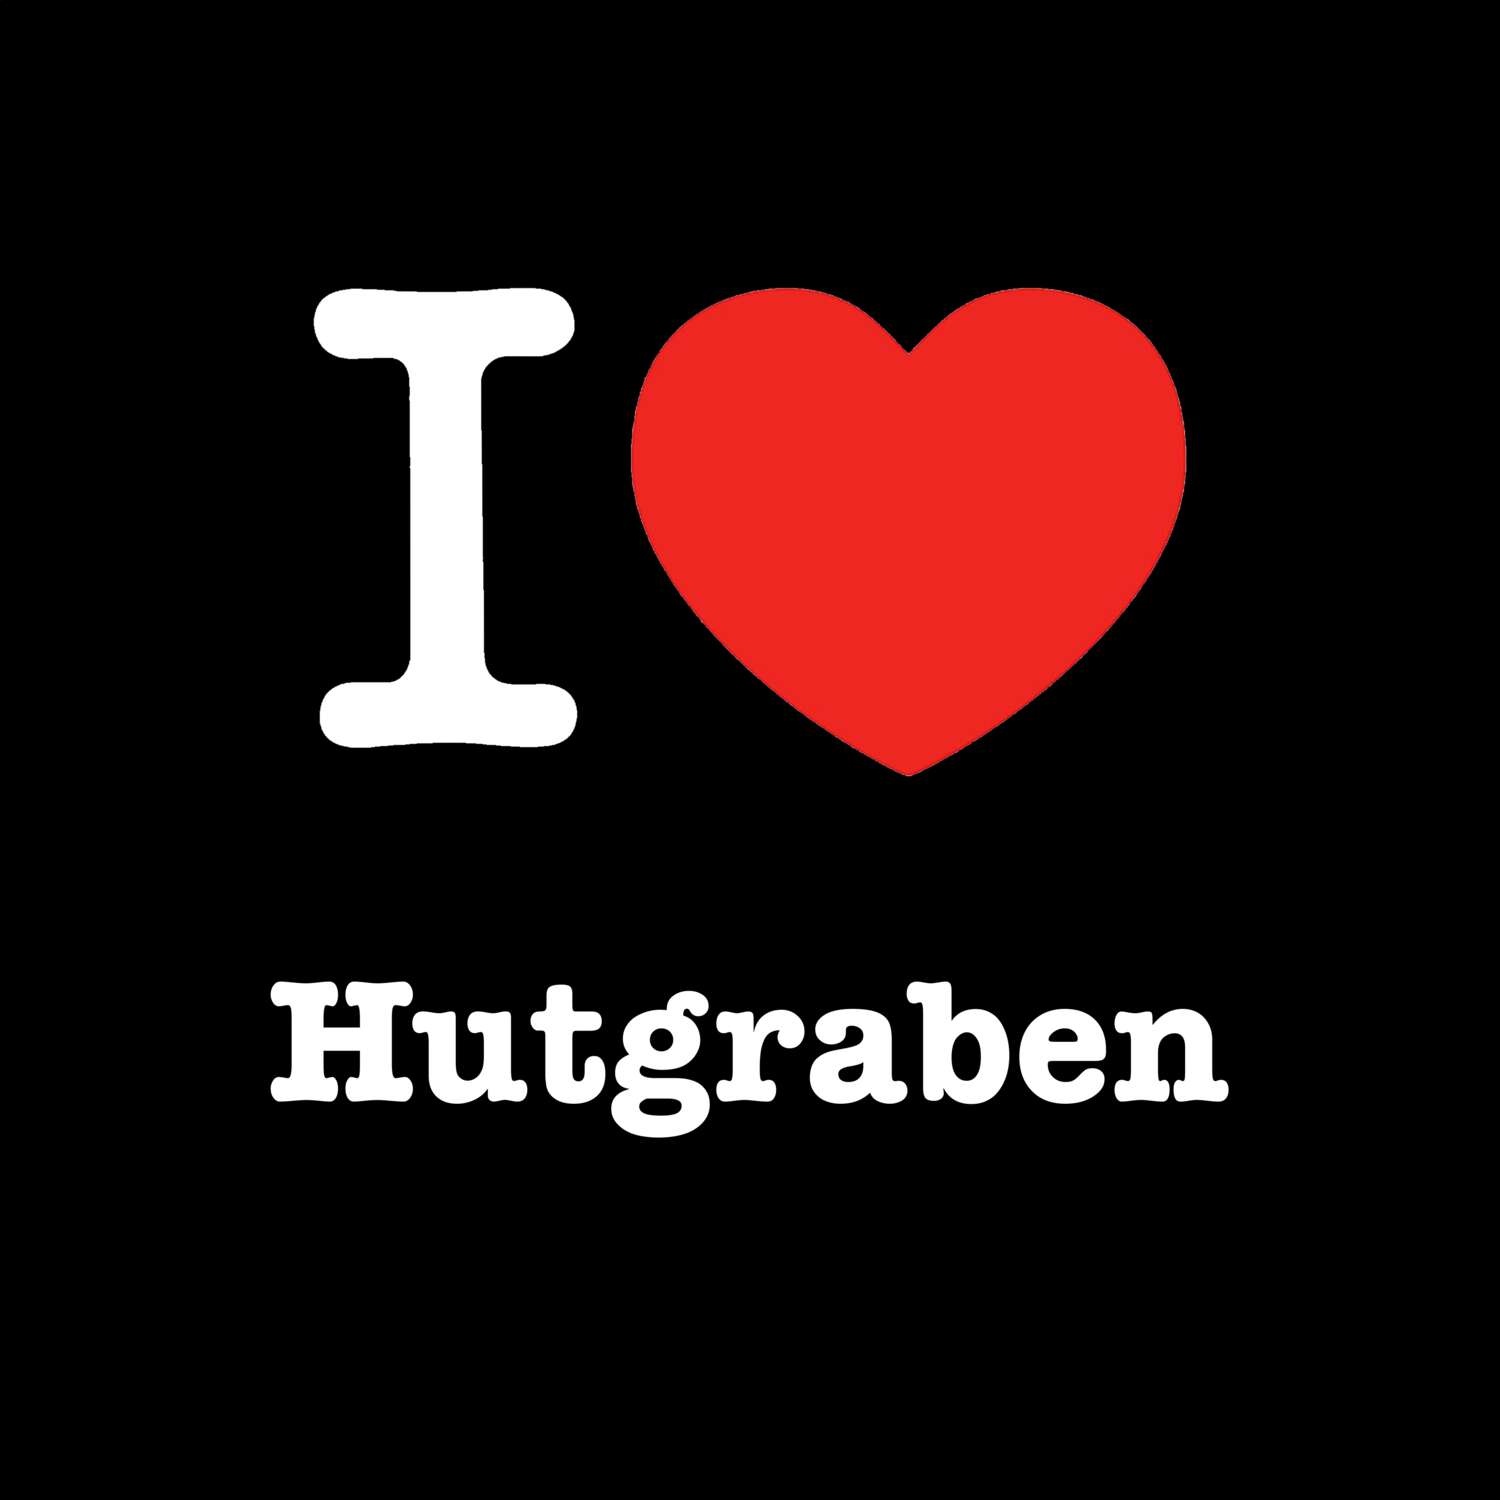 Hutgraben T-Shirt »I love«